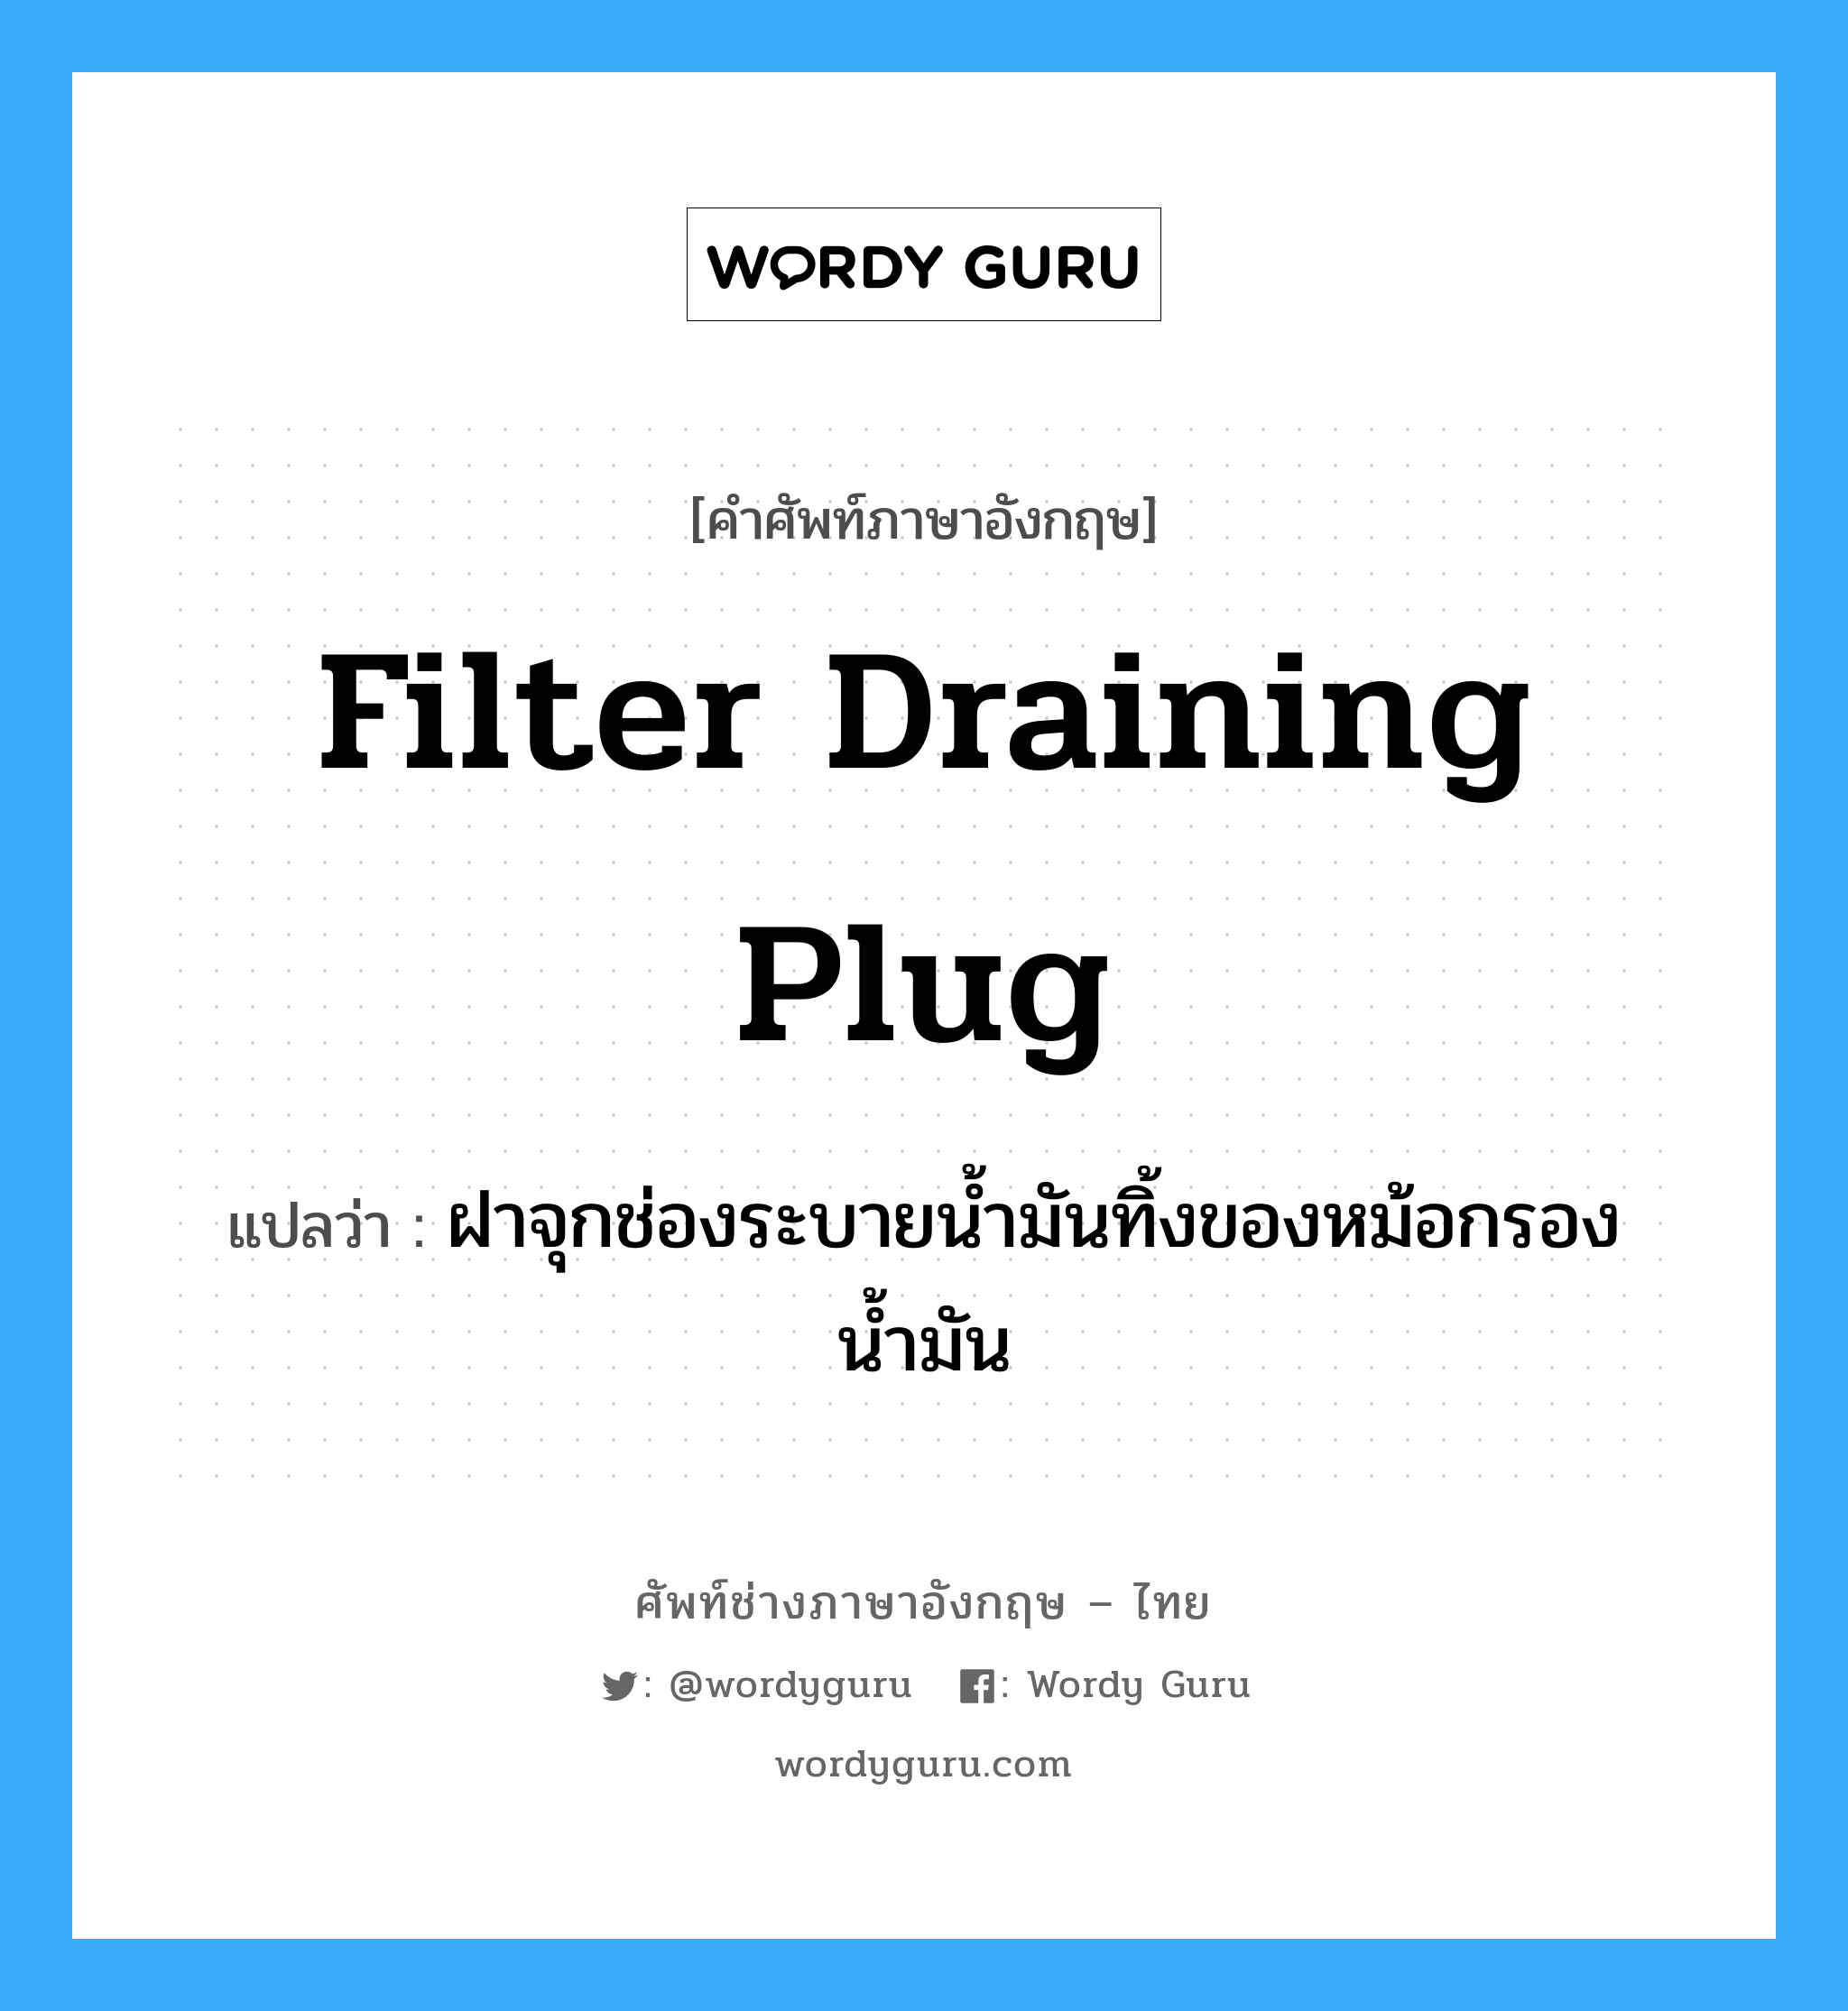 filter draining plug แปลว่า?, คำศัพท์ช่างภาษาอังกฤษ - ไทย filter draining plug คำศัพท์ภาษาอังกฤษ filter draining plug แปลว่า ฝาจุกช่องระบายน้ำมันทิ้งของหม้อกรองน้ำมัน